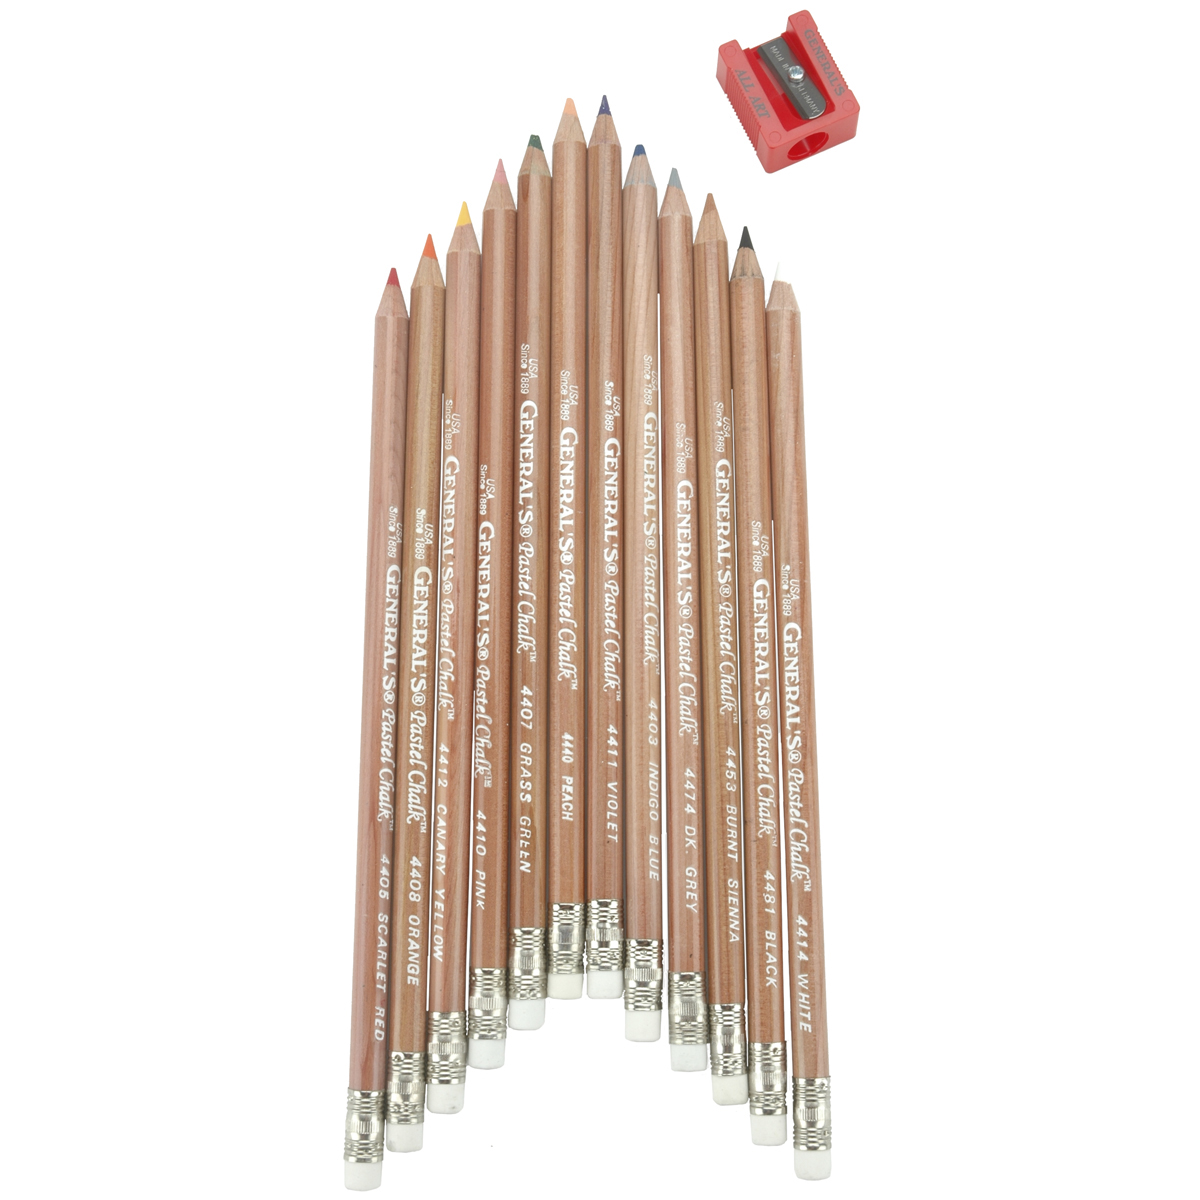 General's Pastel Pencil 12-Color Set 